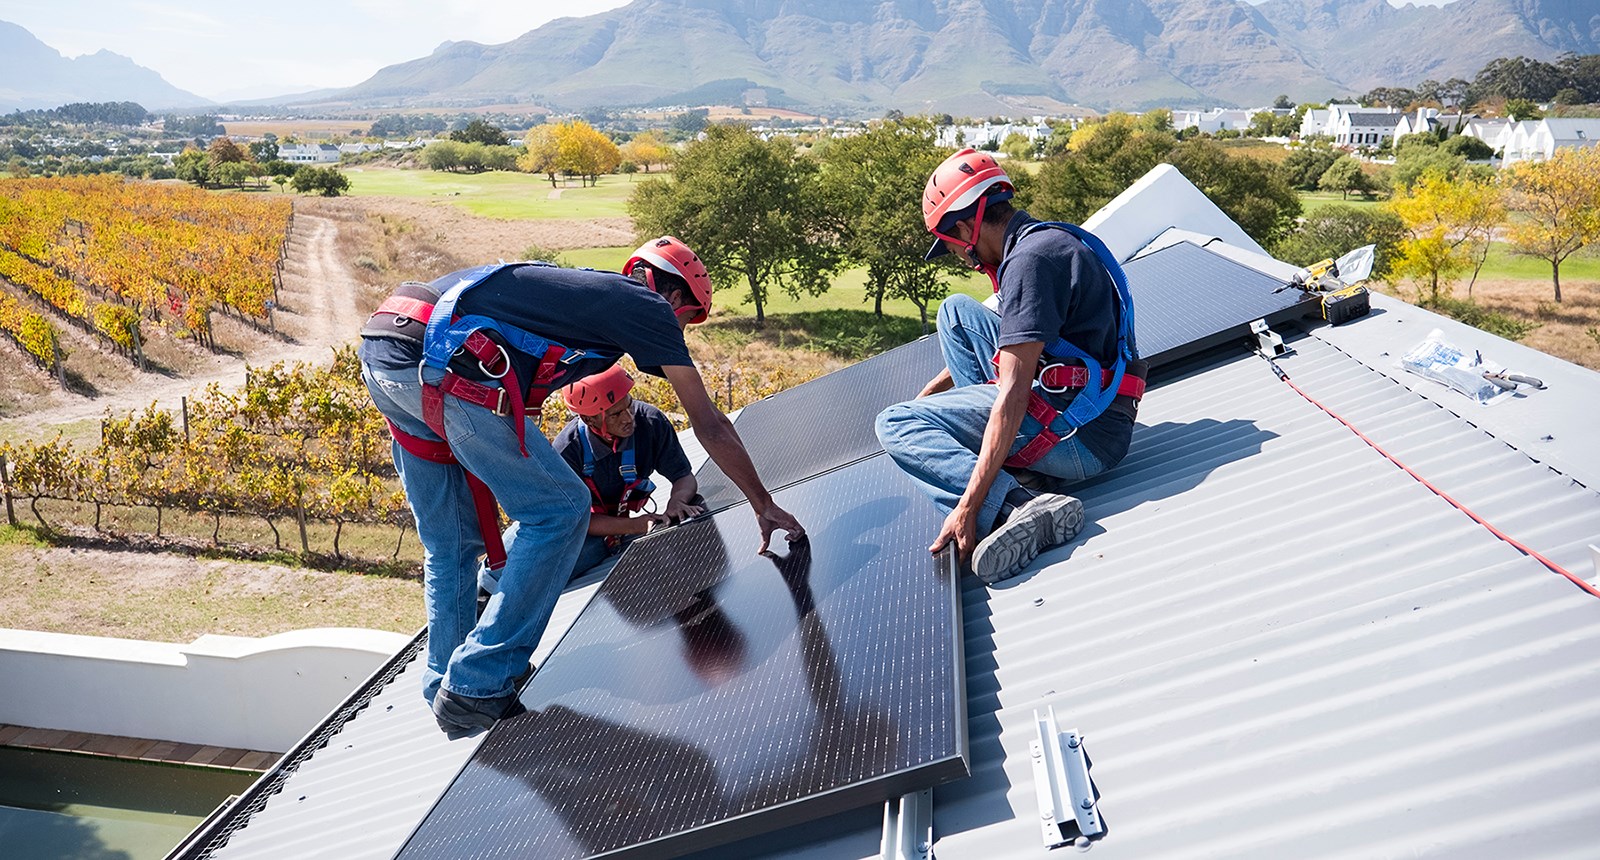 Trois ouvriers portant de l’équipement de protection installent des panneaux solaires sur un toit, avec le paysage du Cap, en Afrique du Sud, derrière eux.